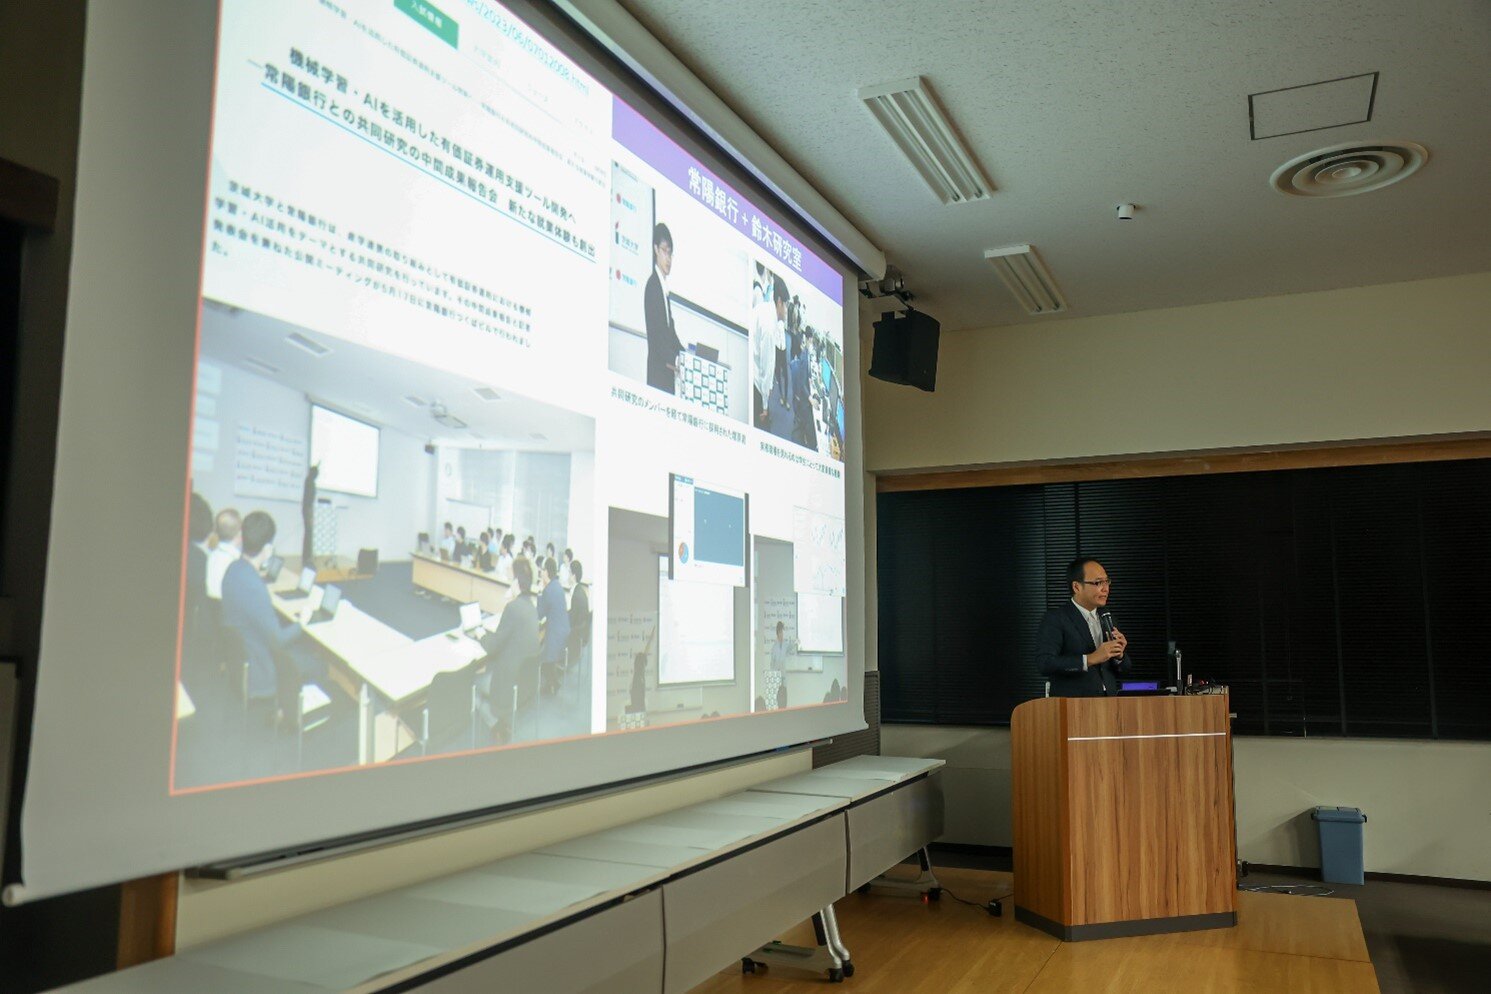 鈴木教授は豊富な事例を紹介しながらコーオプ教育やデータ・サイエンスについて説明